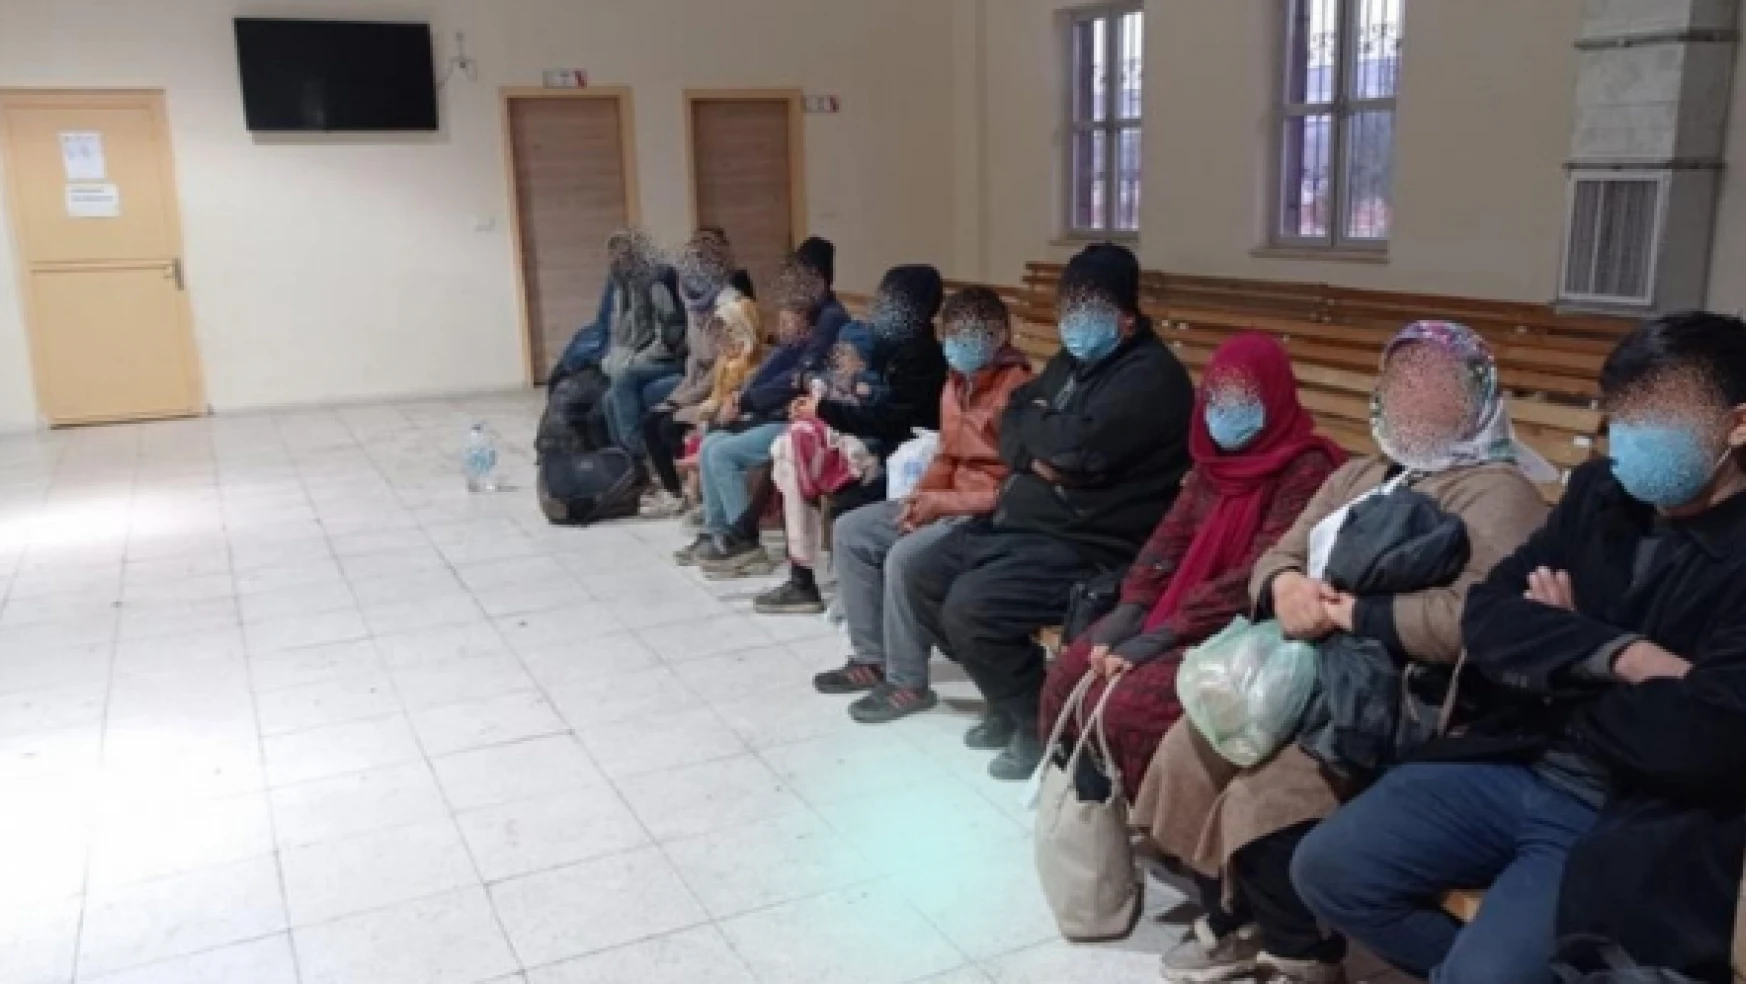 Malatya'da 54 düzensiz göçmen yakalandı